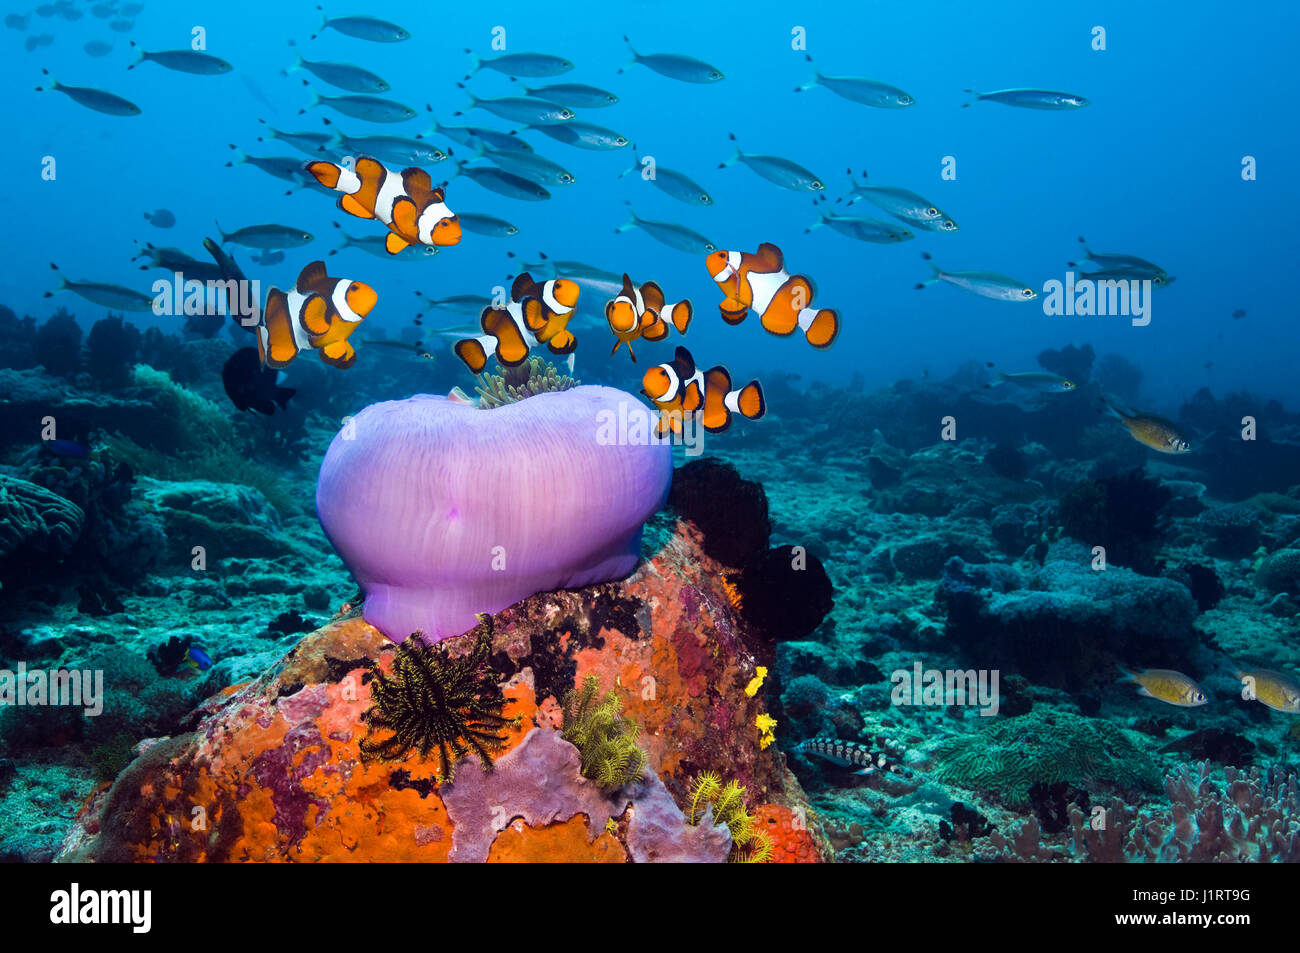 False clown anemonefish [Amphiprion ocellaris] sulla barriera corallina con una chiusa magnifica anemone [Heteractis magnifica]. Indonesia. Foto Stock